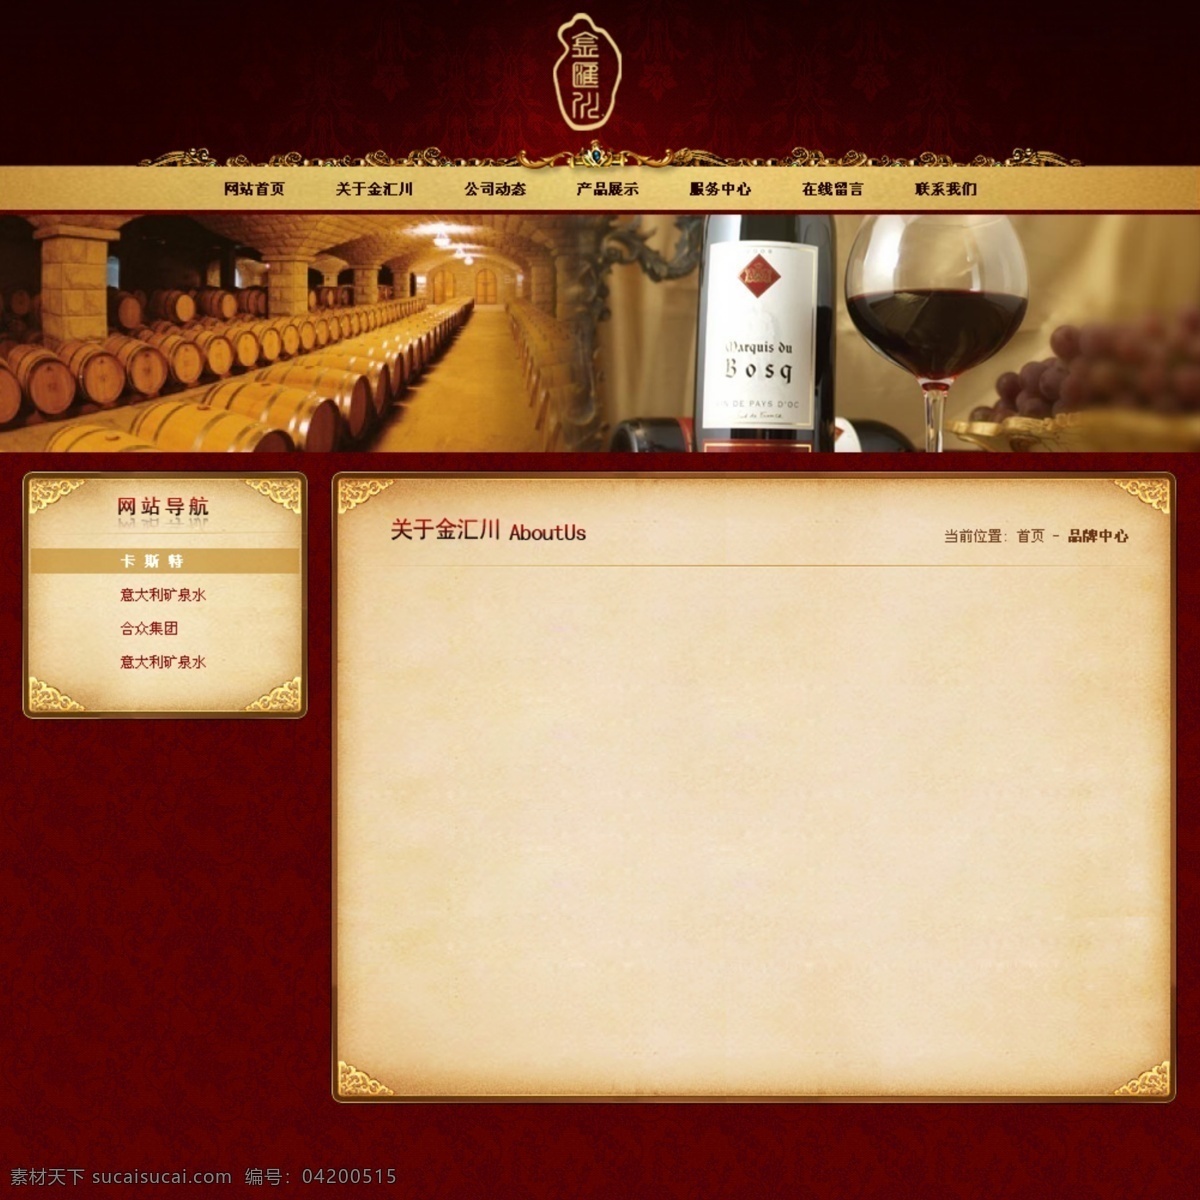 红酒 网站 效果图 红色模板 葡萄酒 其他模板 网页模板 源文件 红酒网站 网页素材